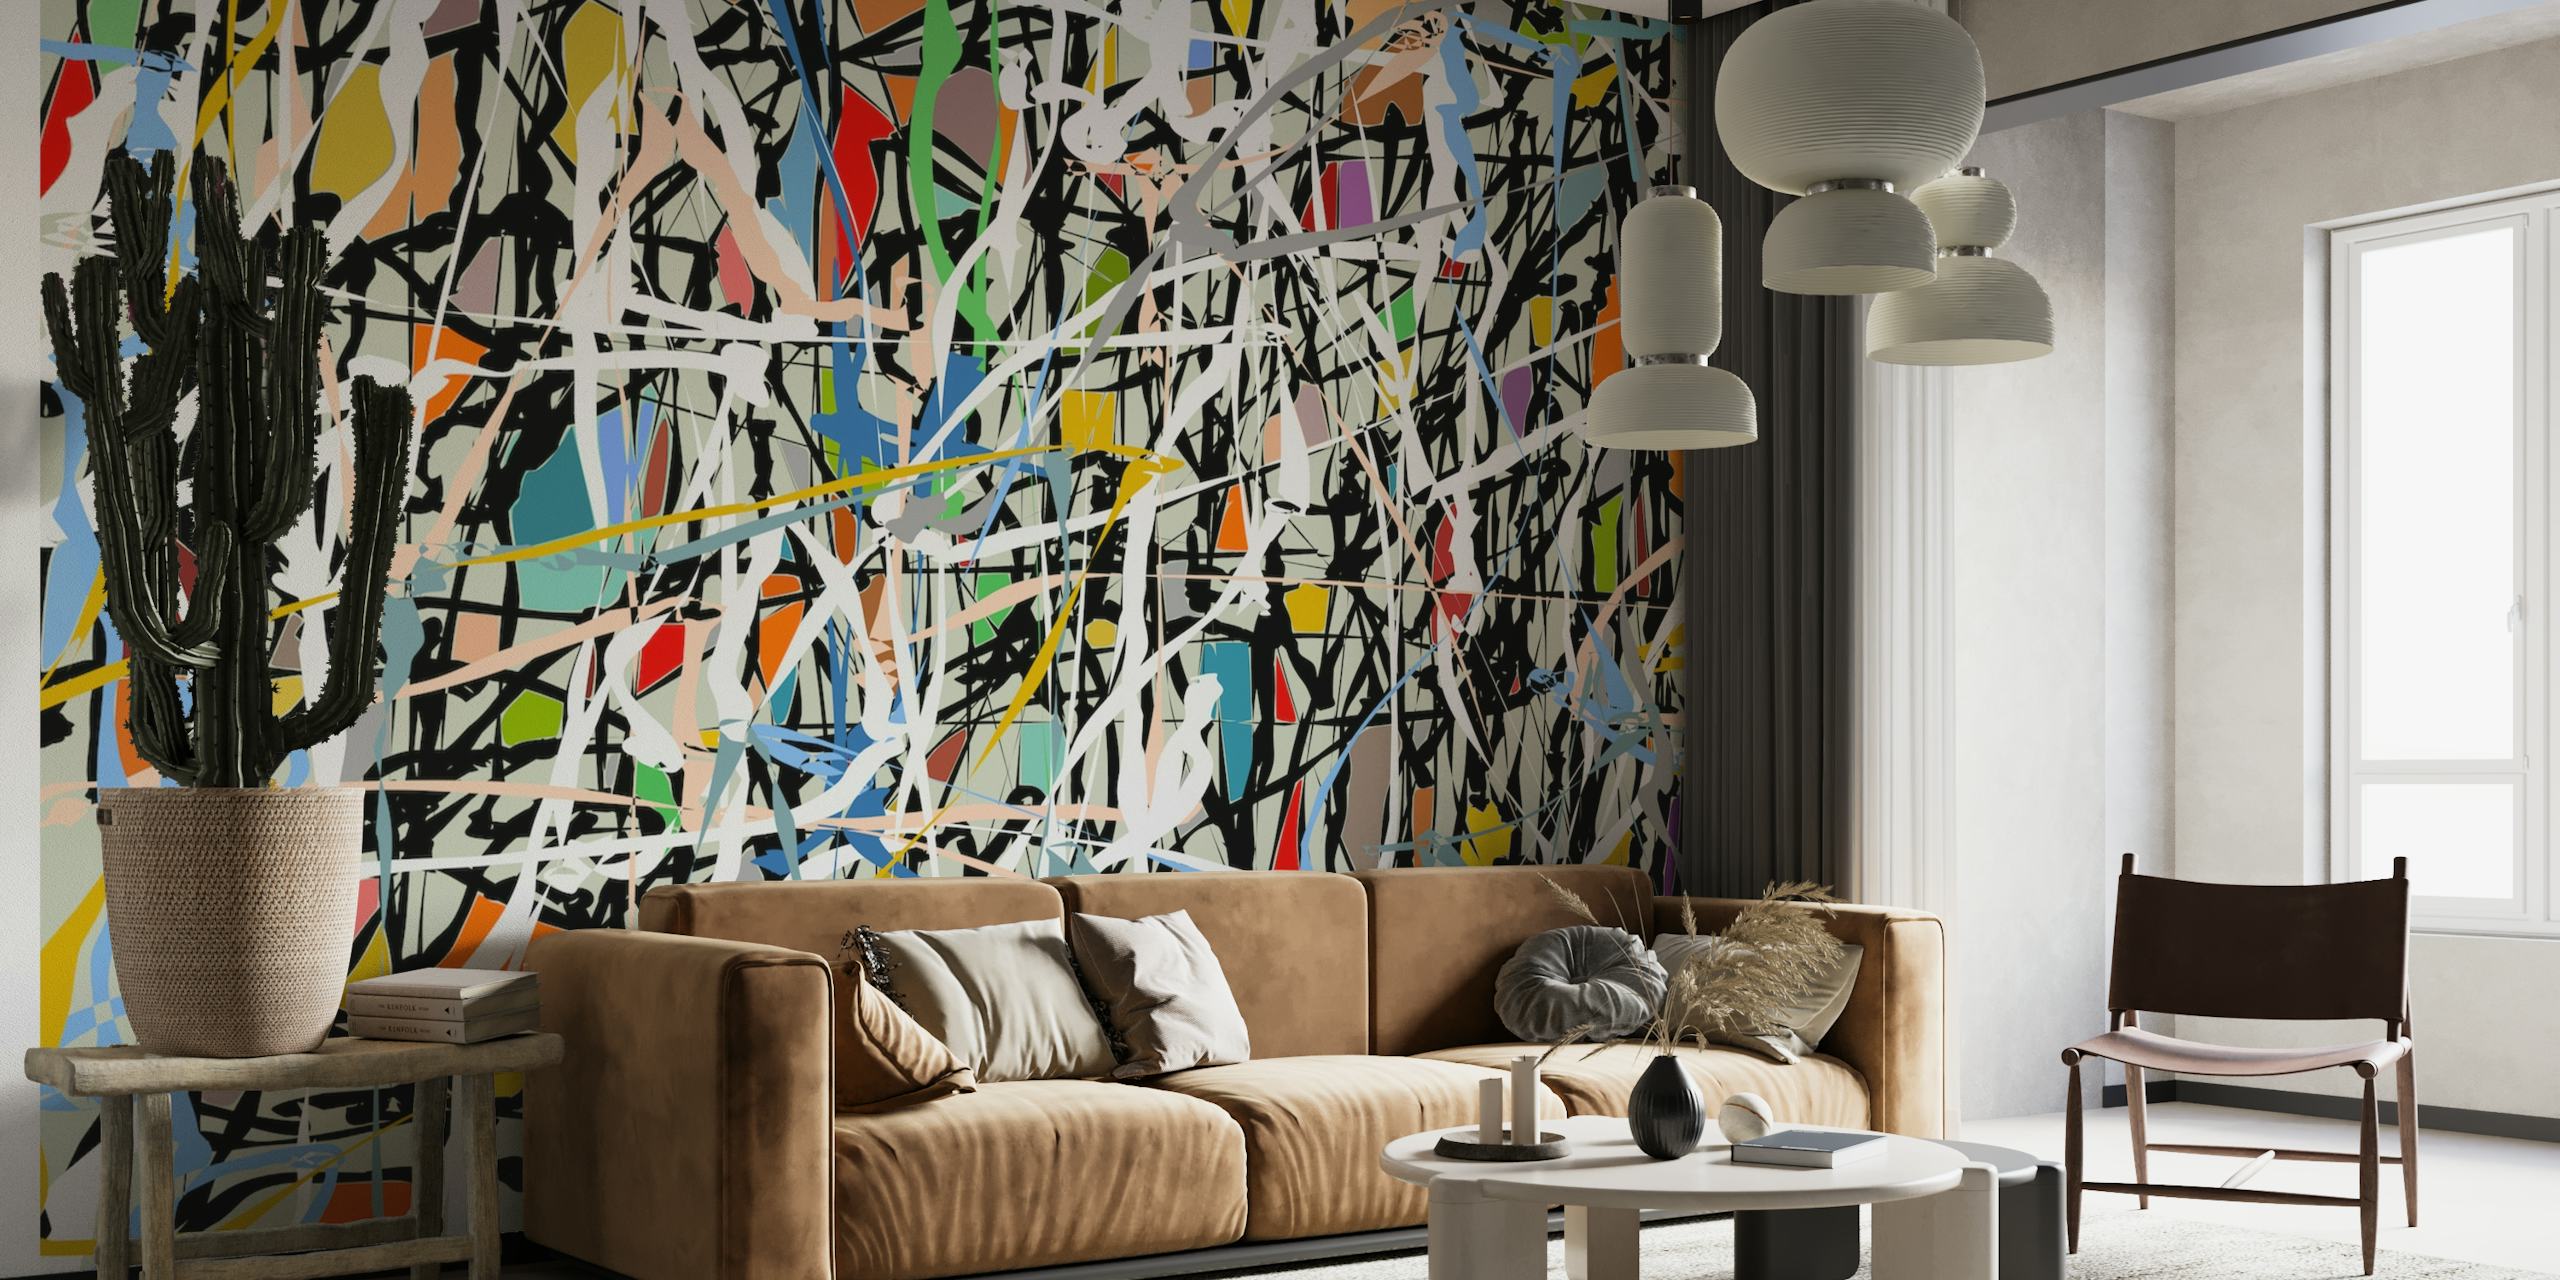 Mural de pared de estilo expresionista abstracto con salpicaduras vibrantes y trazos atrevidos similares a las obras de arte de Pollock